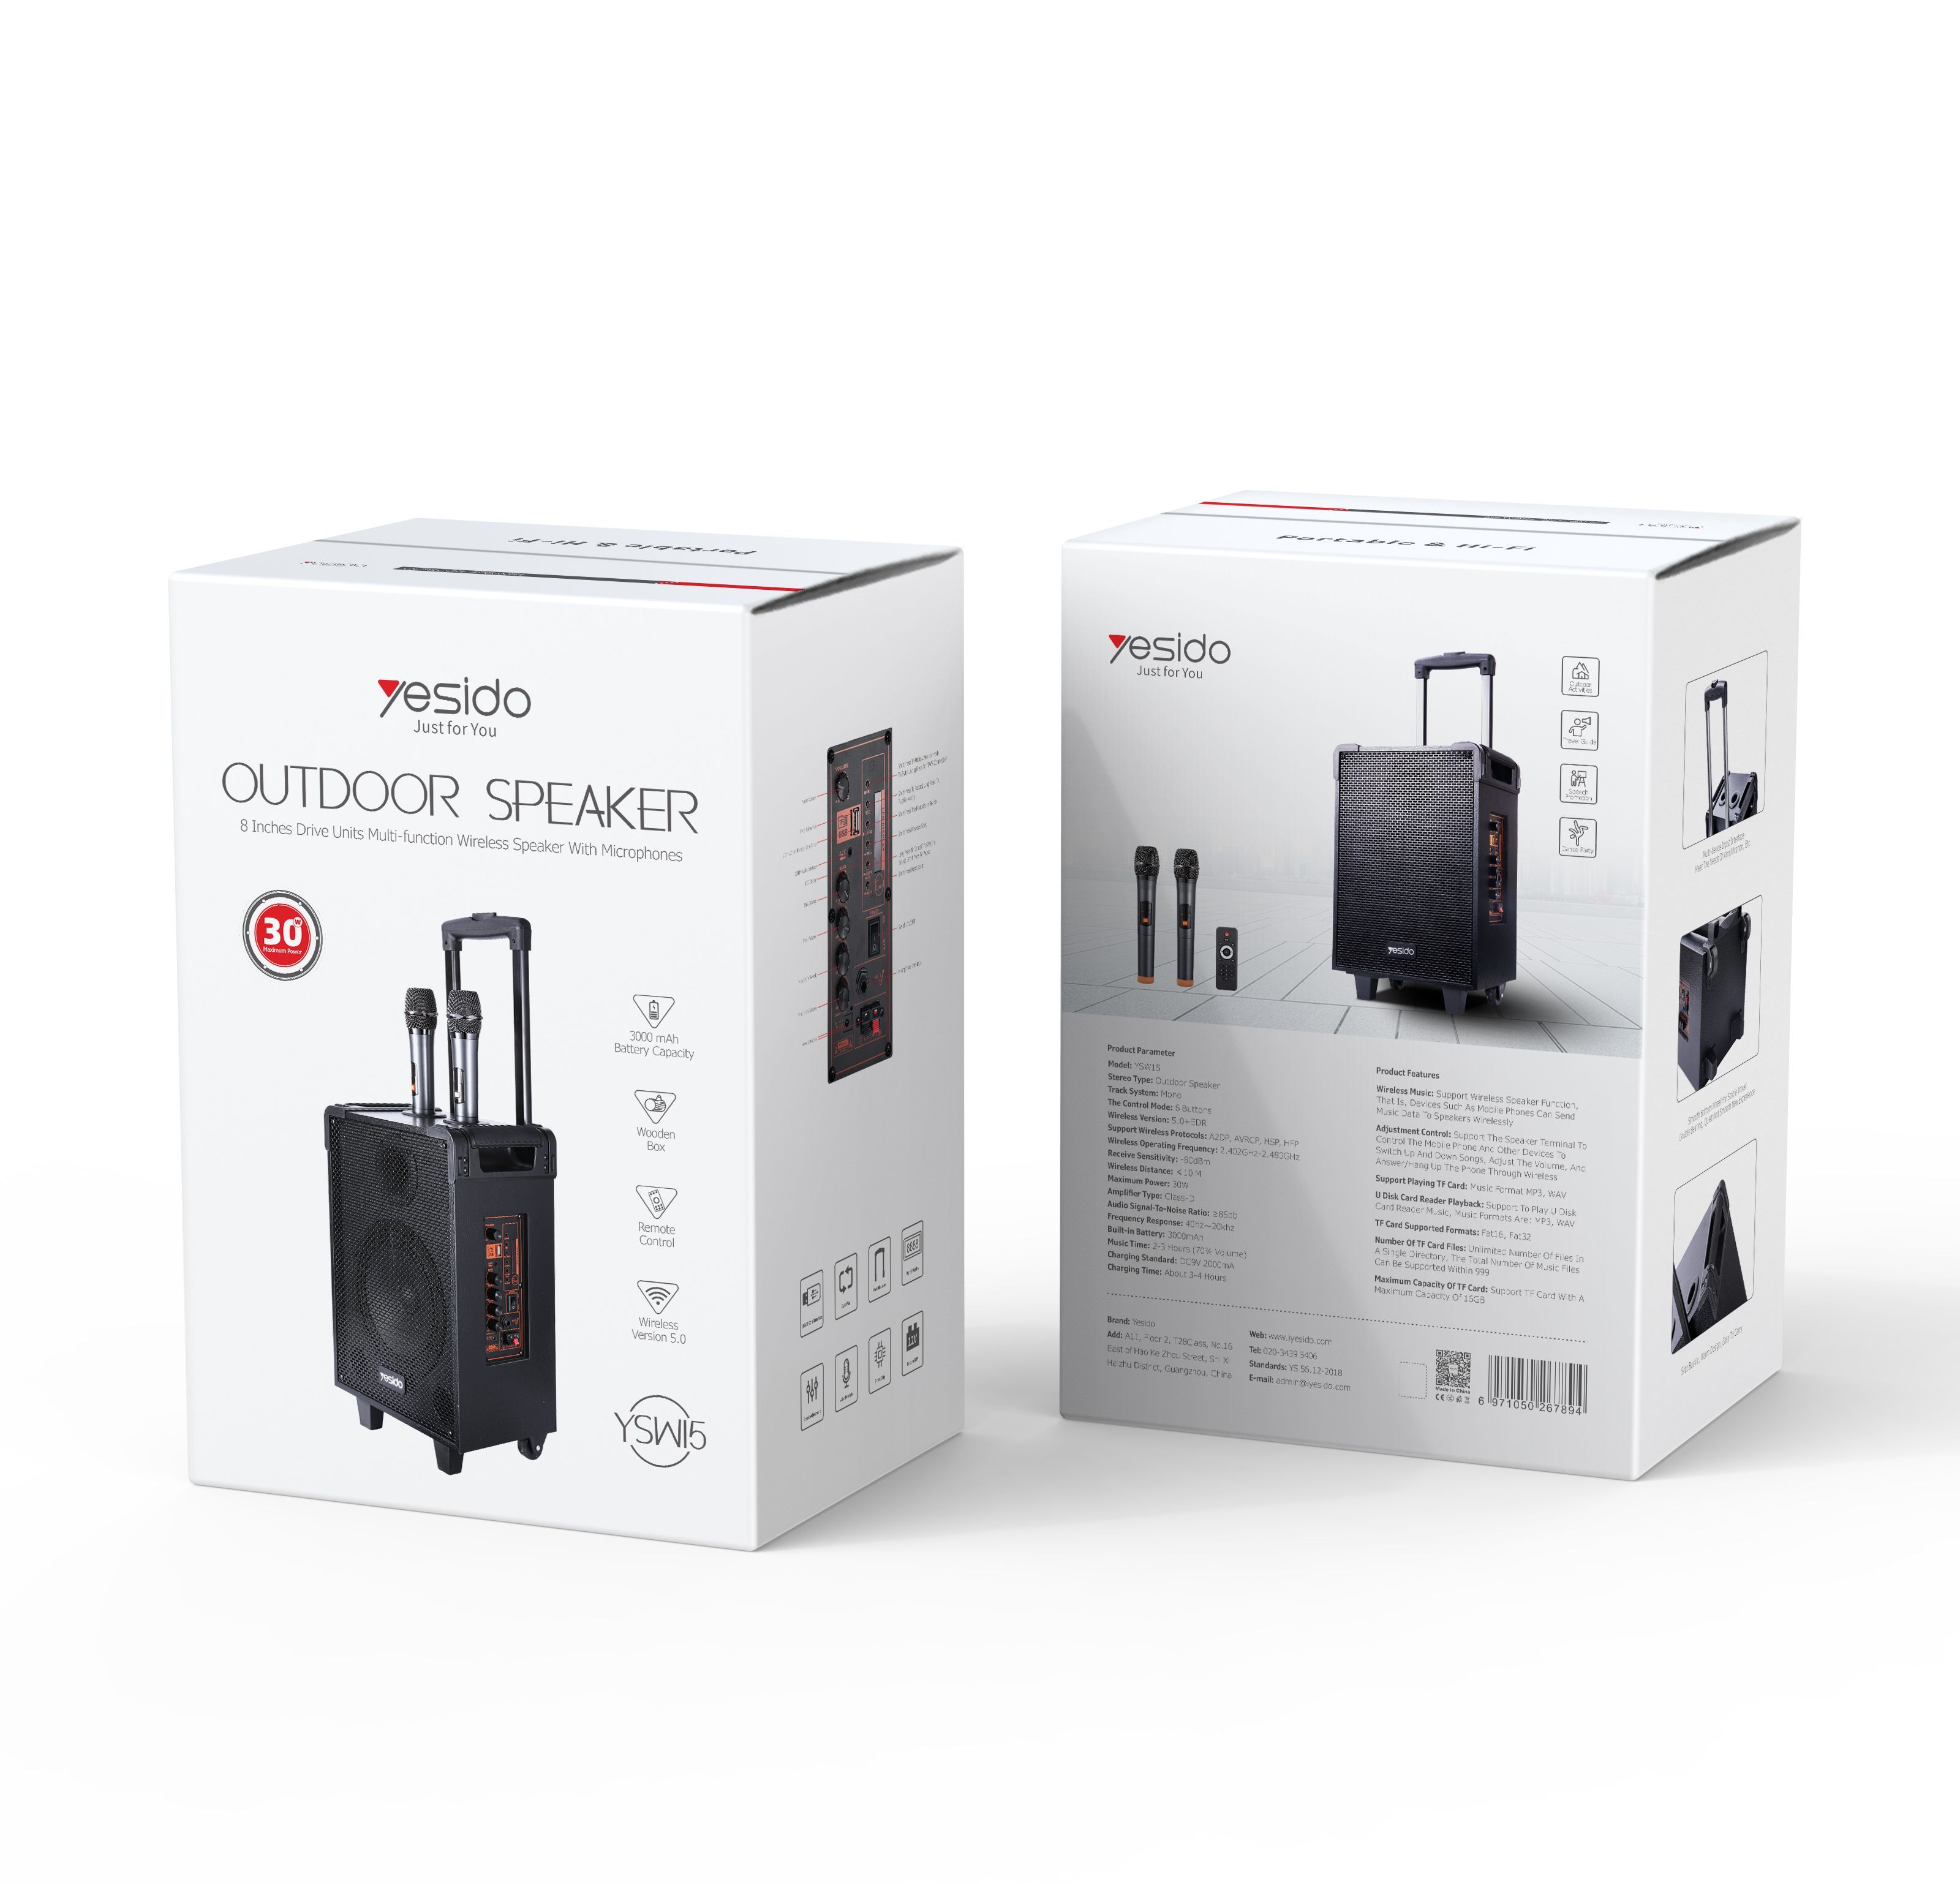 Yesido YSW15 30W Wireless Ourdoor Speaker Packaging